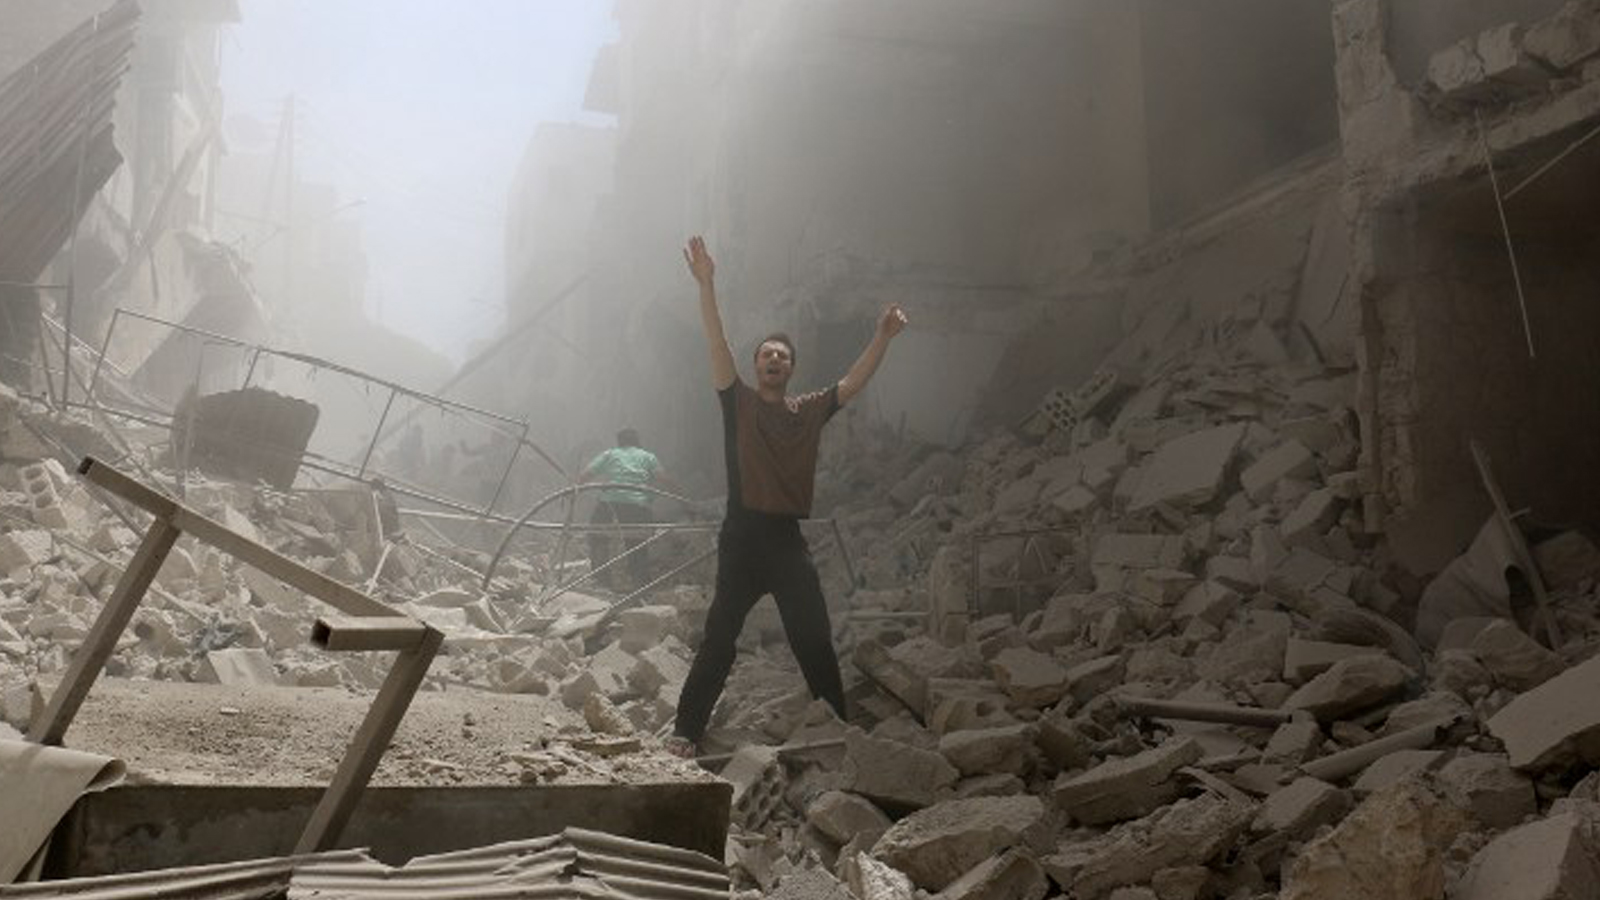 قوات النظام تستعد لـ"معركة ضخمة" في حلب